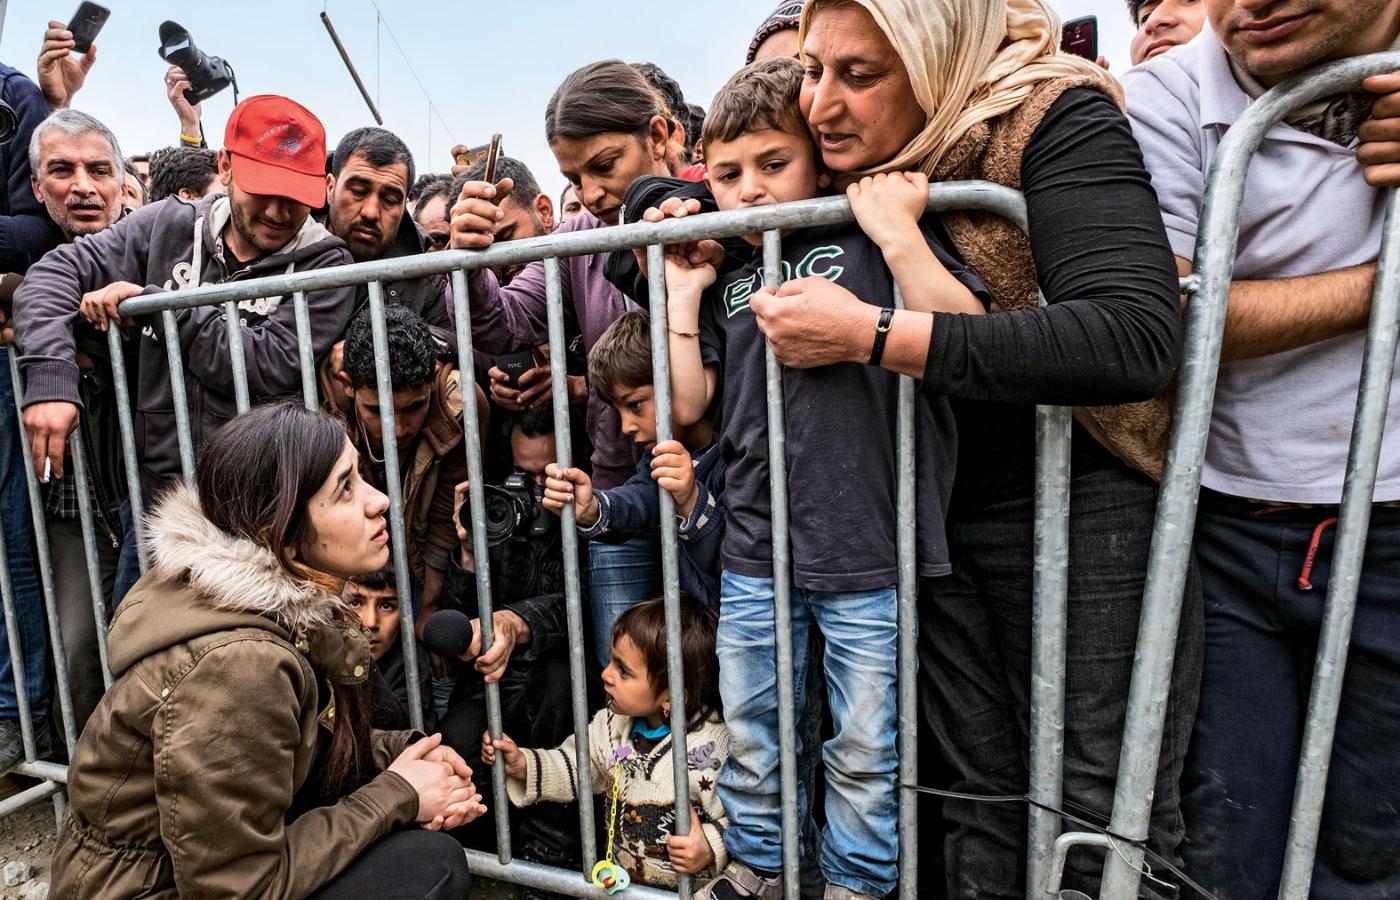 Laureatka Pokojowego Nobla Nadia Murad, jazydka więziona i gwałcona przez bojowników Państwa Islamskiego, na fot. w obozie dla uchodźców w Idomeni w Grecji.